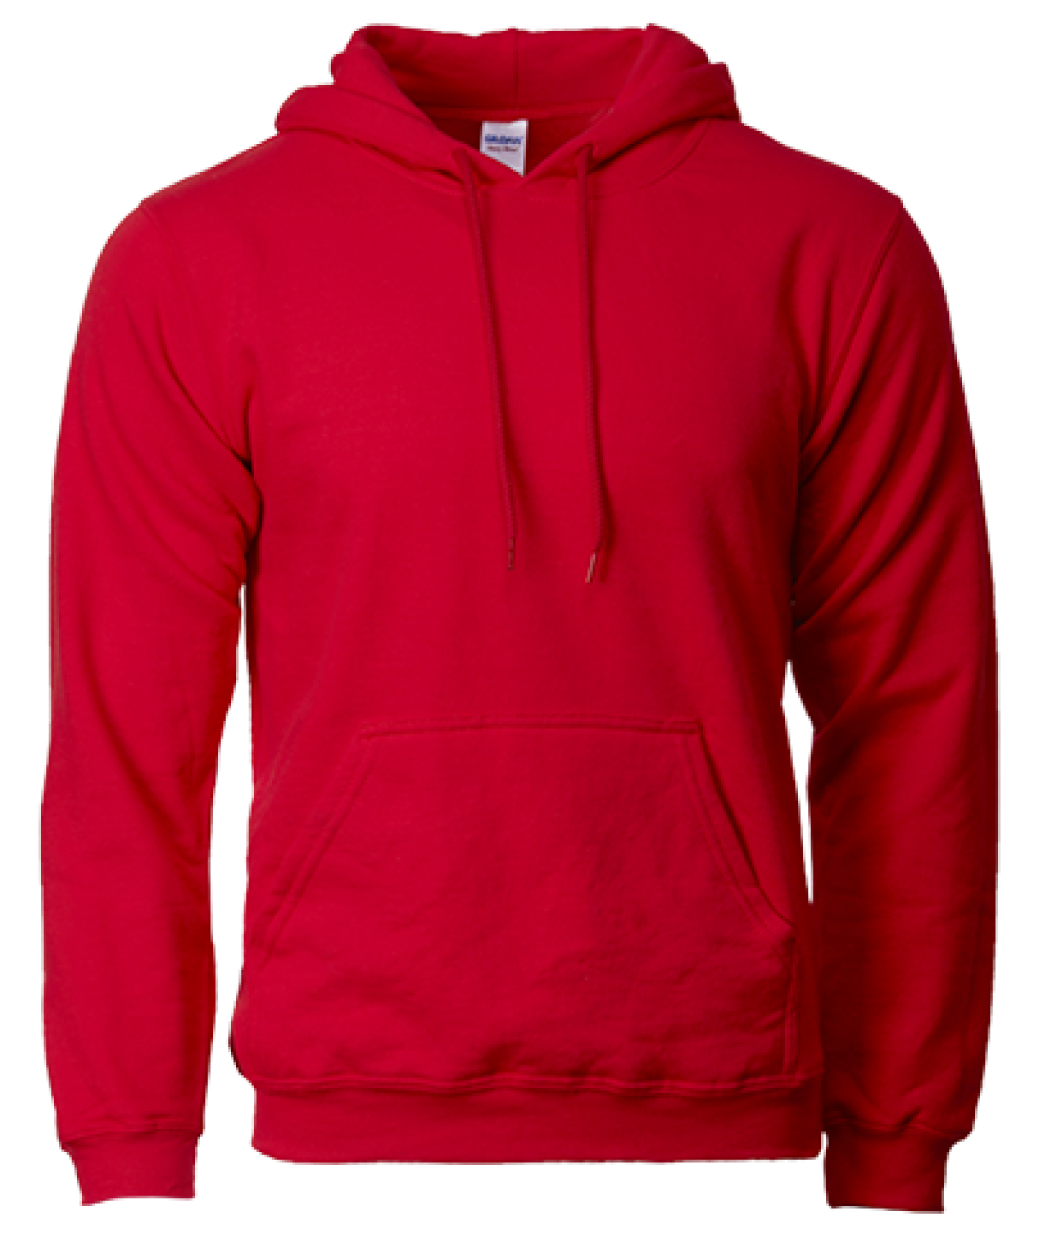 Gildan 88500 Unisex Hooded Sweatshirt – 285gm